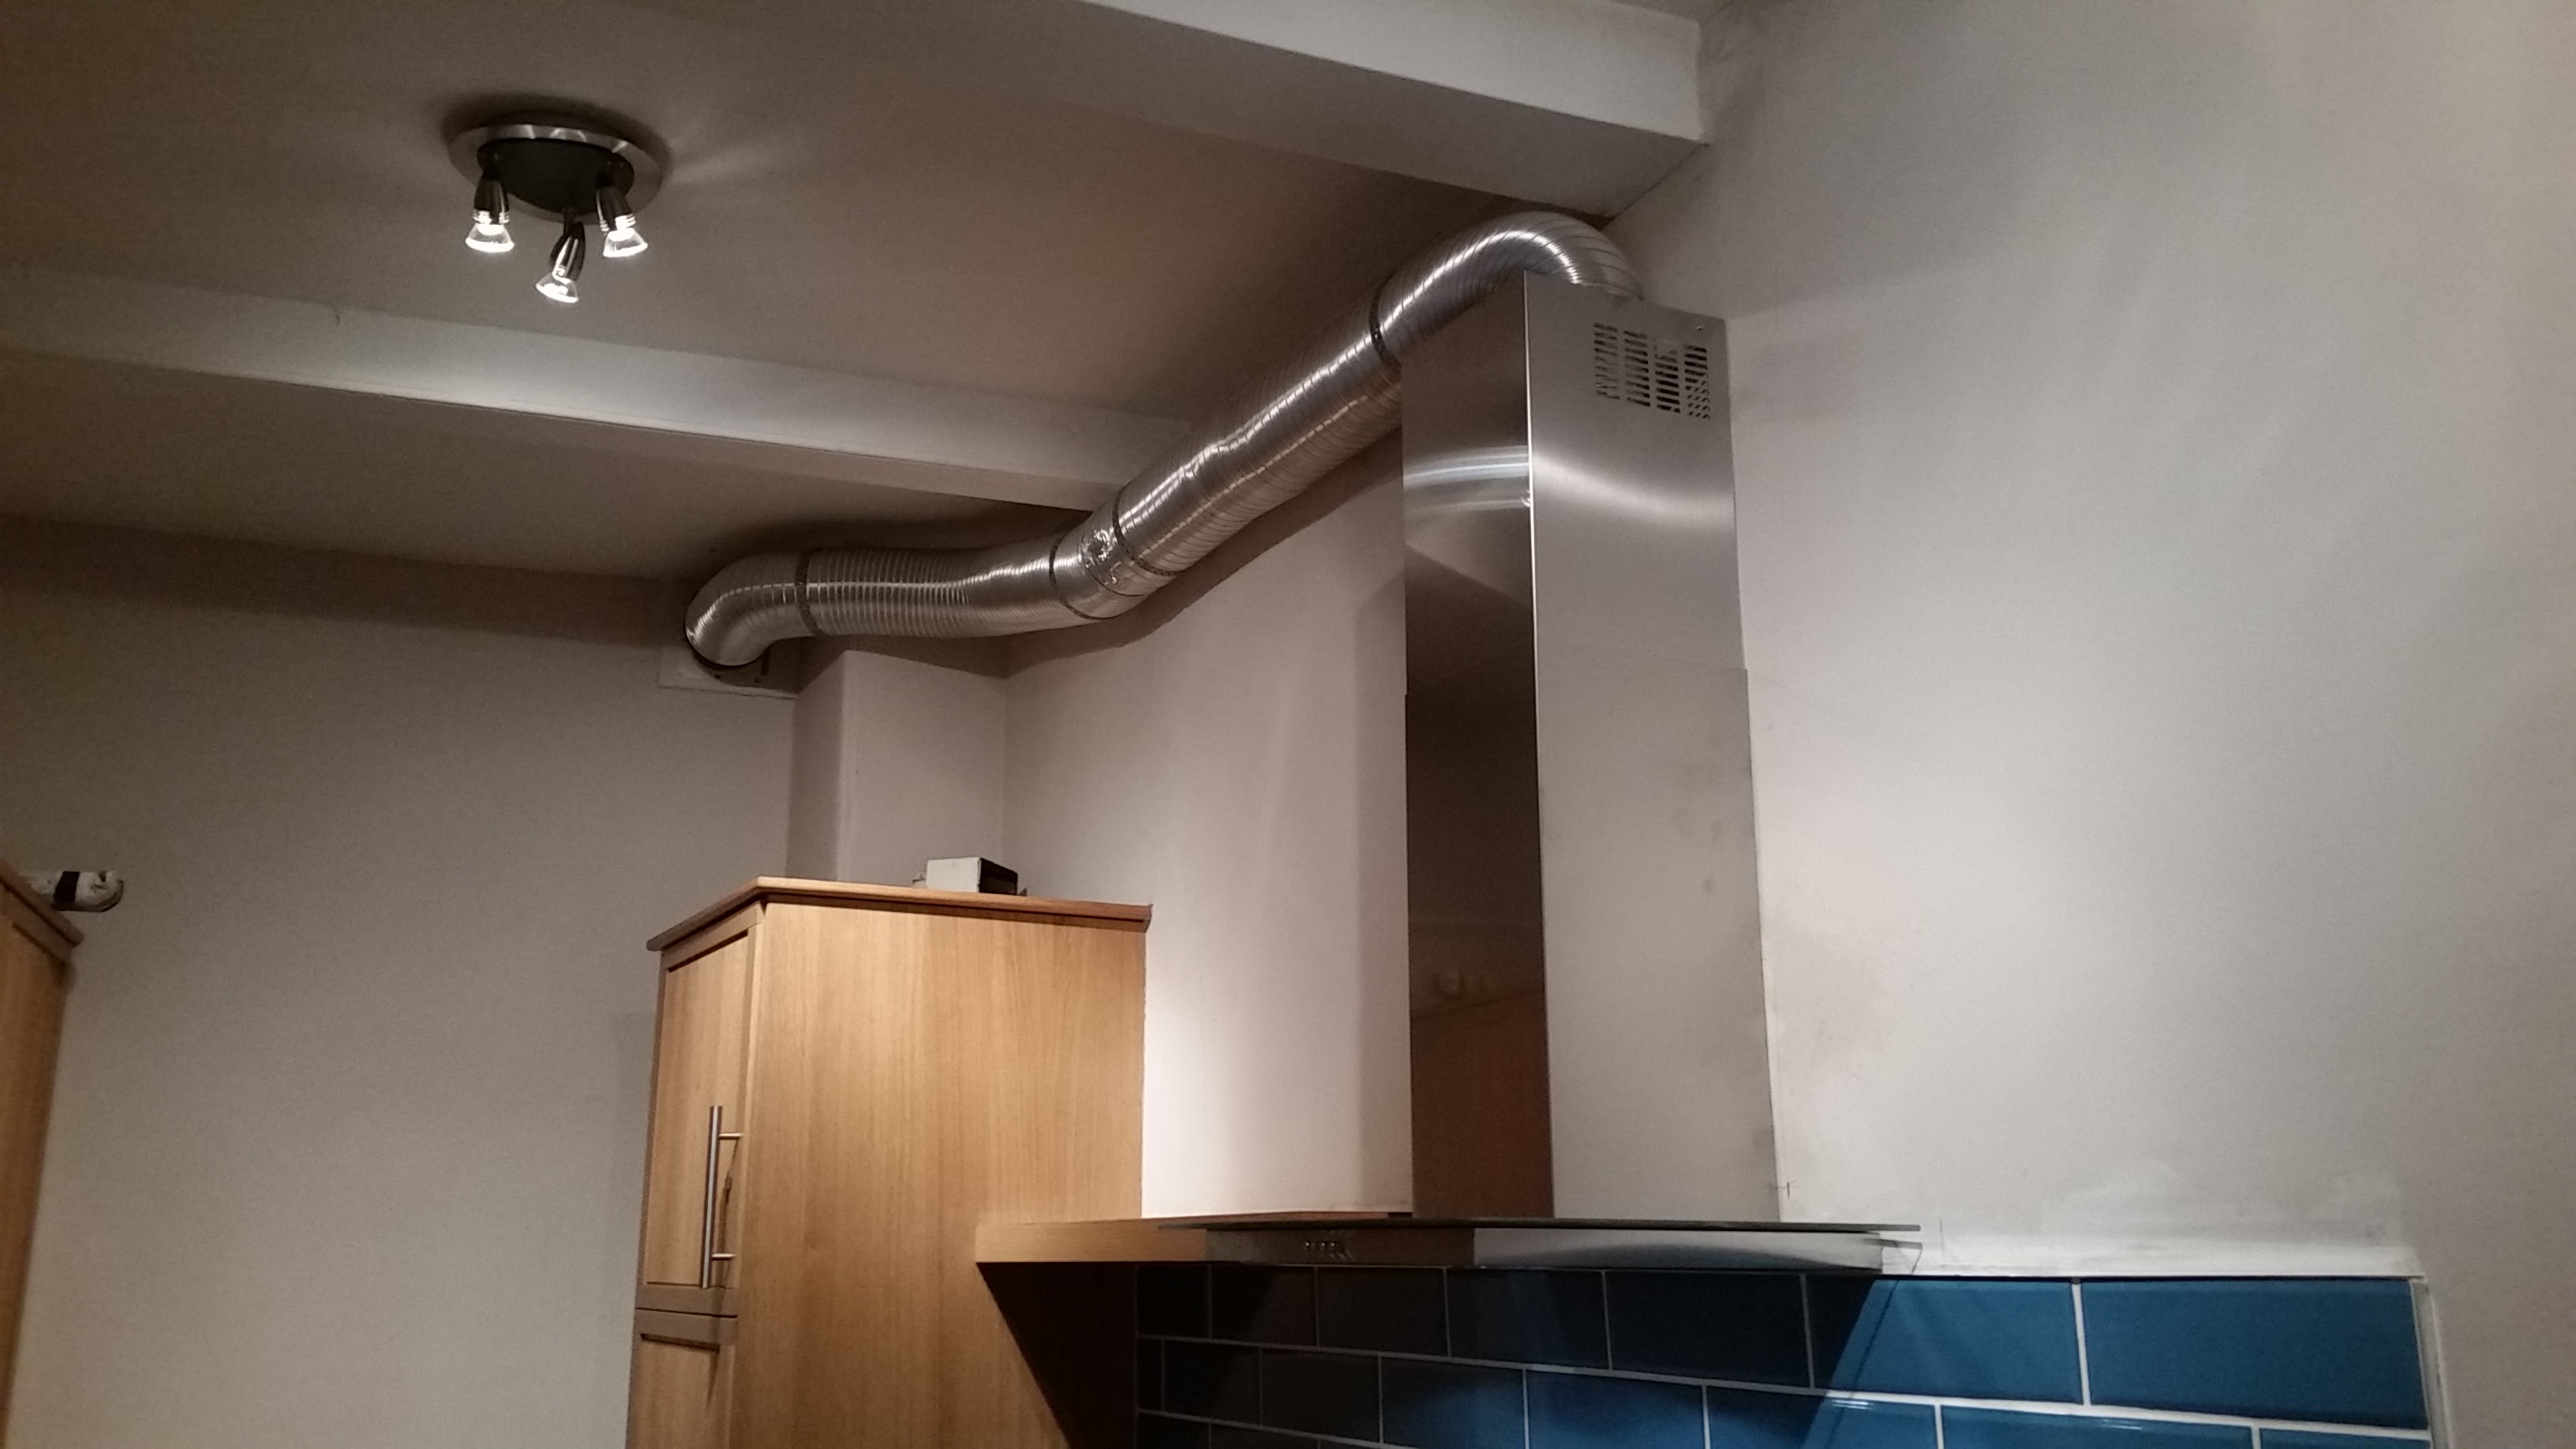 вытяжка на кухне с отводом в вентиляцию в стене